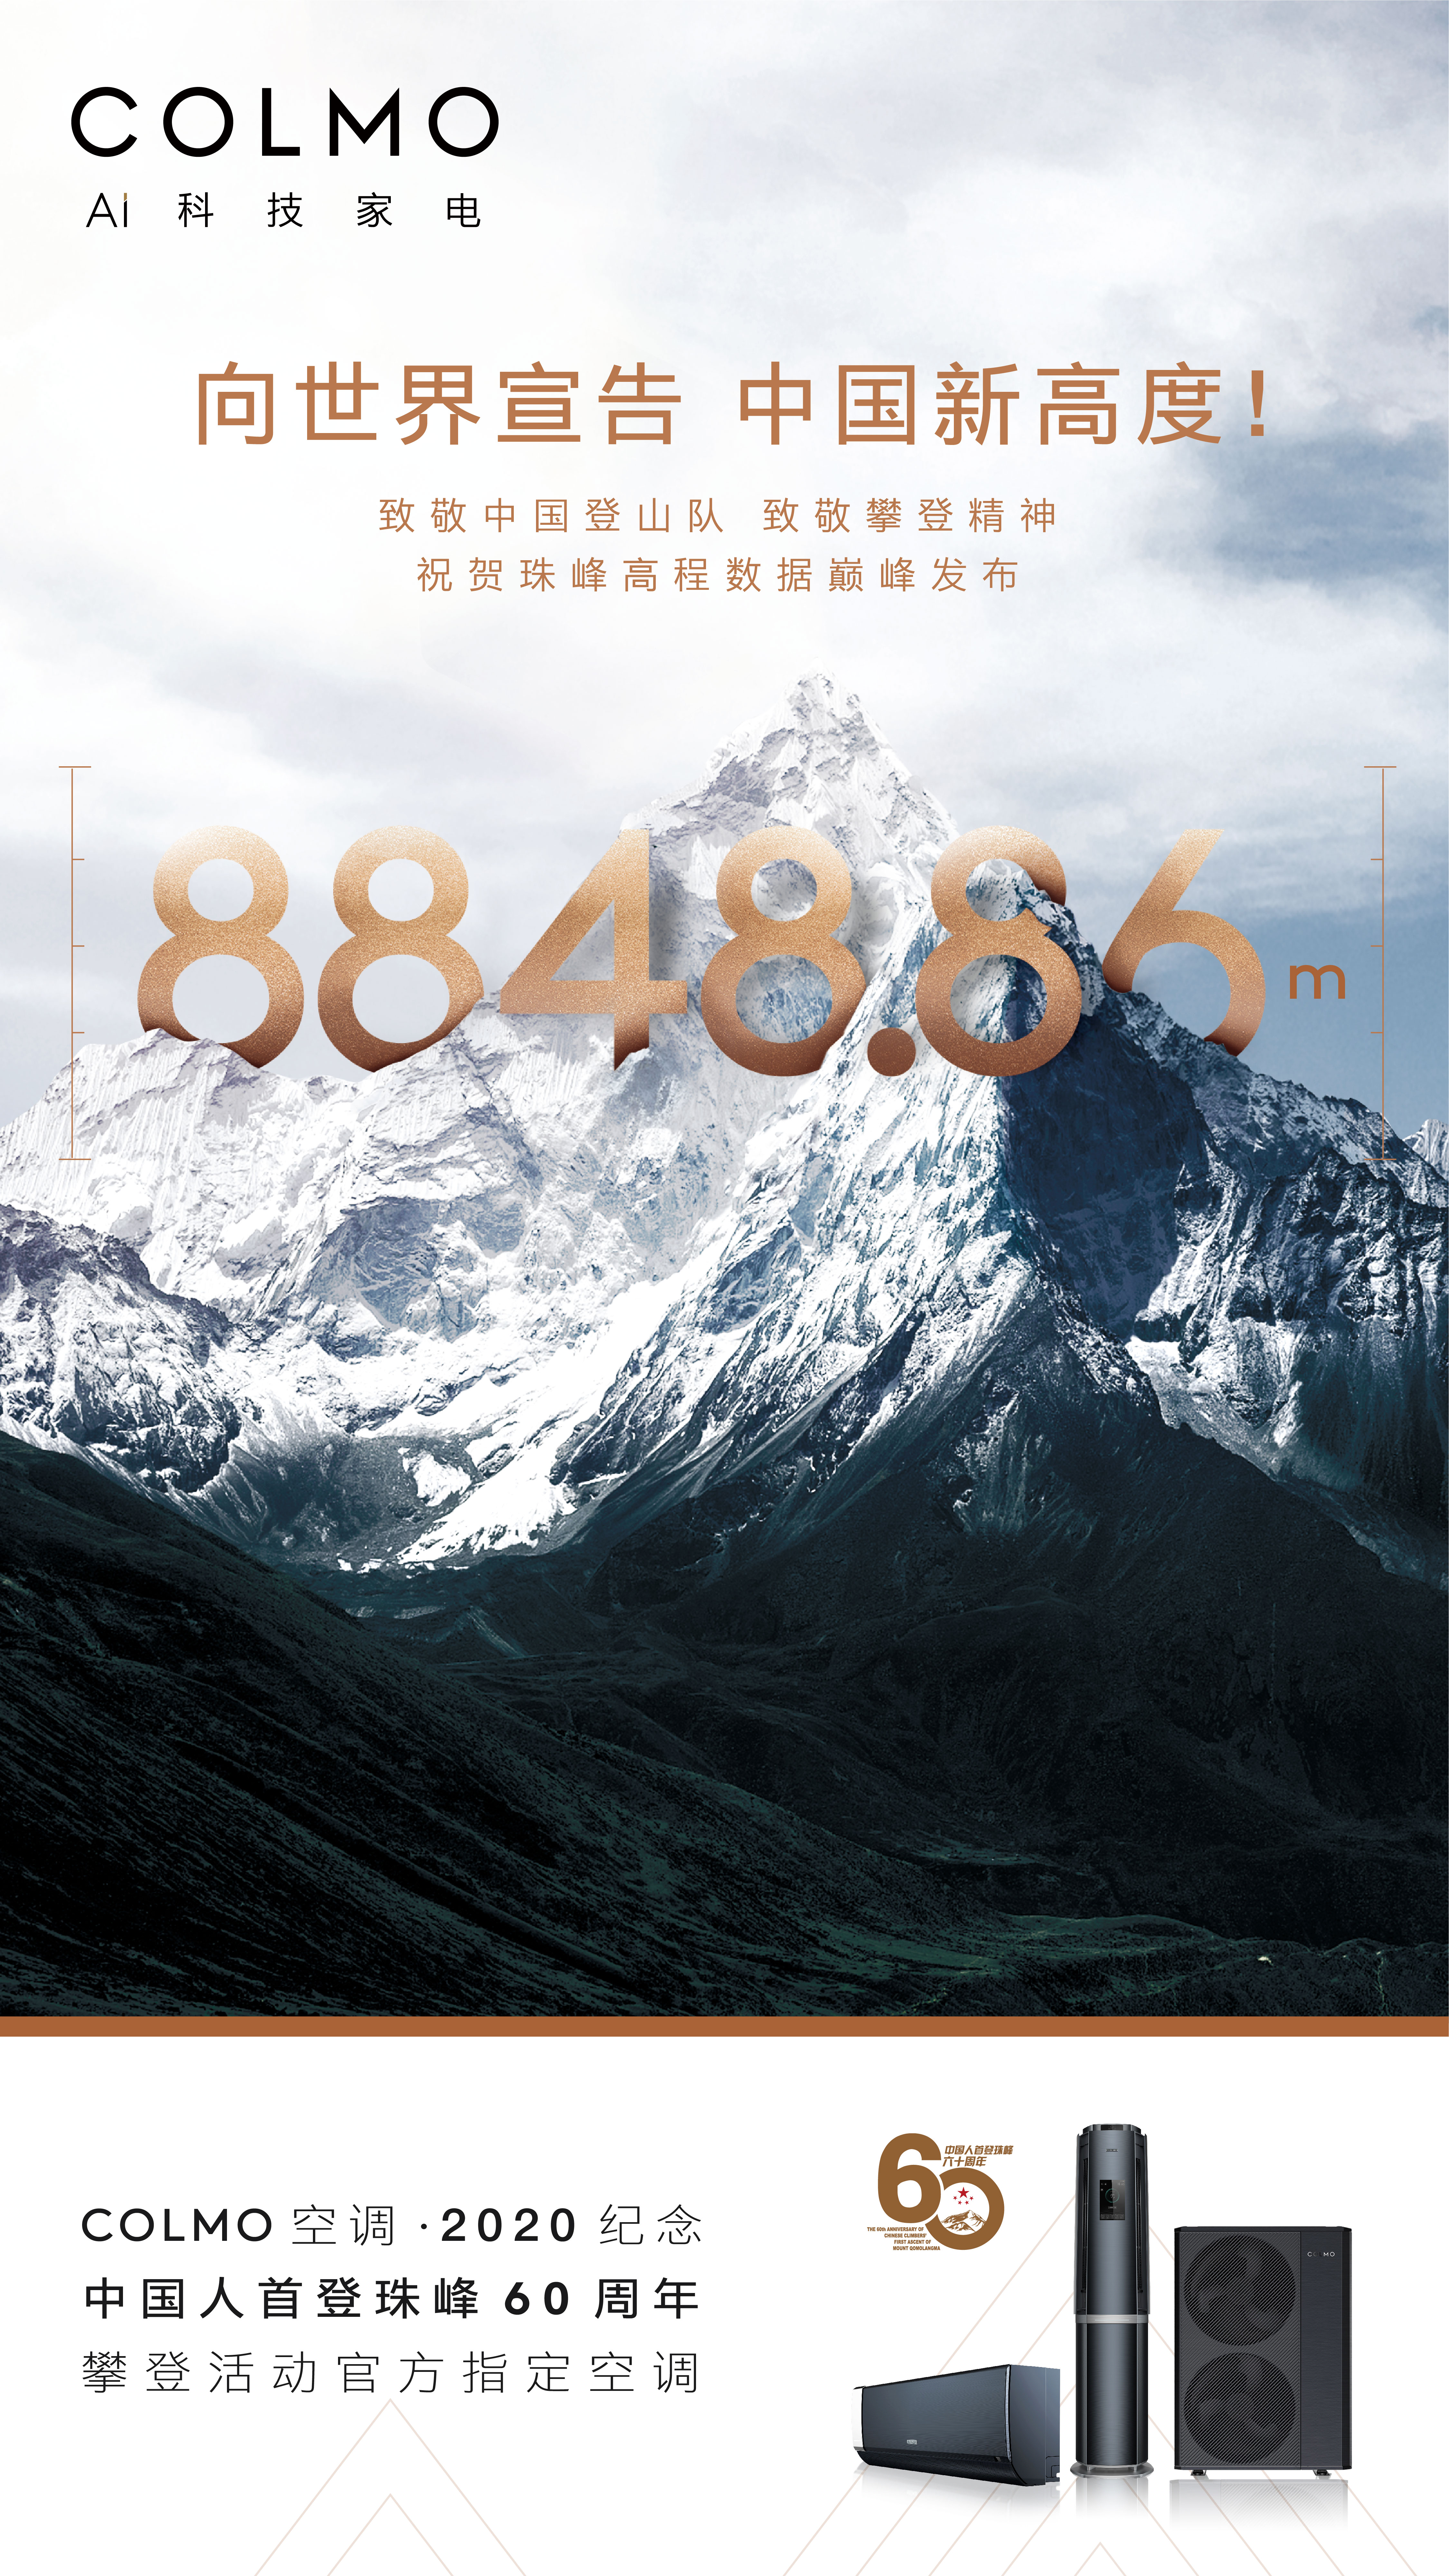 直击最新消息,2020年12月8日16时,珠穆朗玛峰的全新高度正式载入史册。中国向世界公布珠峰最新高程8848.86米,以有史以来最精确的测量结果刷新人类珠峰测...